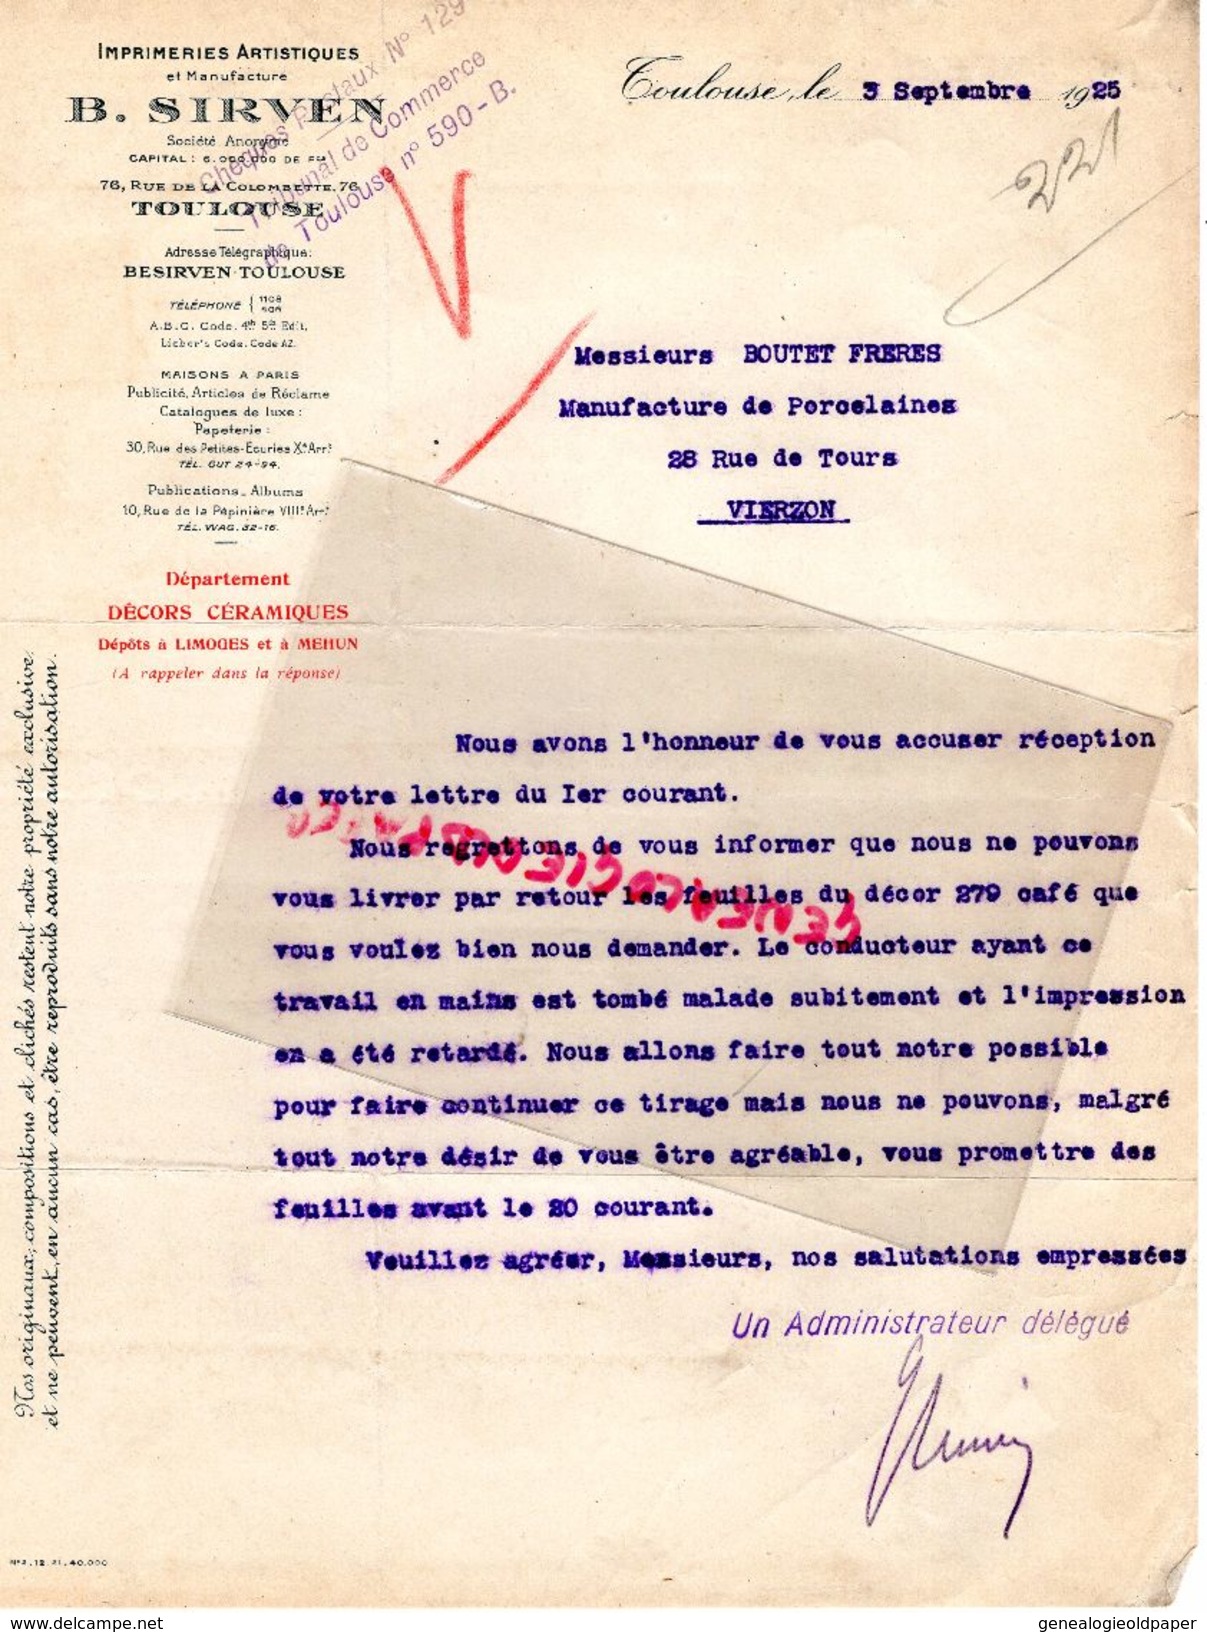 31- TOULOUSE- LETTRE B. SIRVEN- IMPRIMERIE ARTISTIQUE MANUFACTURE-76 RUE COLOMBETTE- 1925 - Drukkerij & Papieren